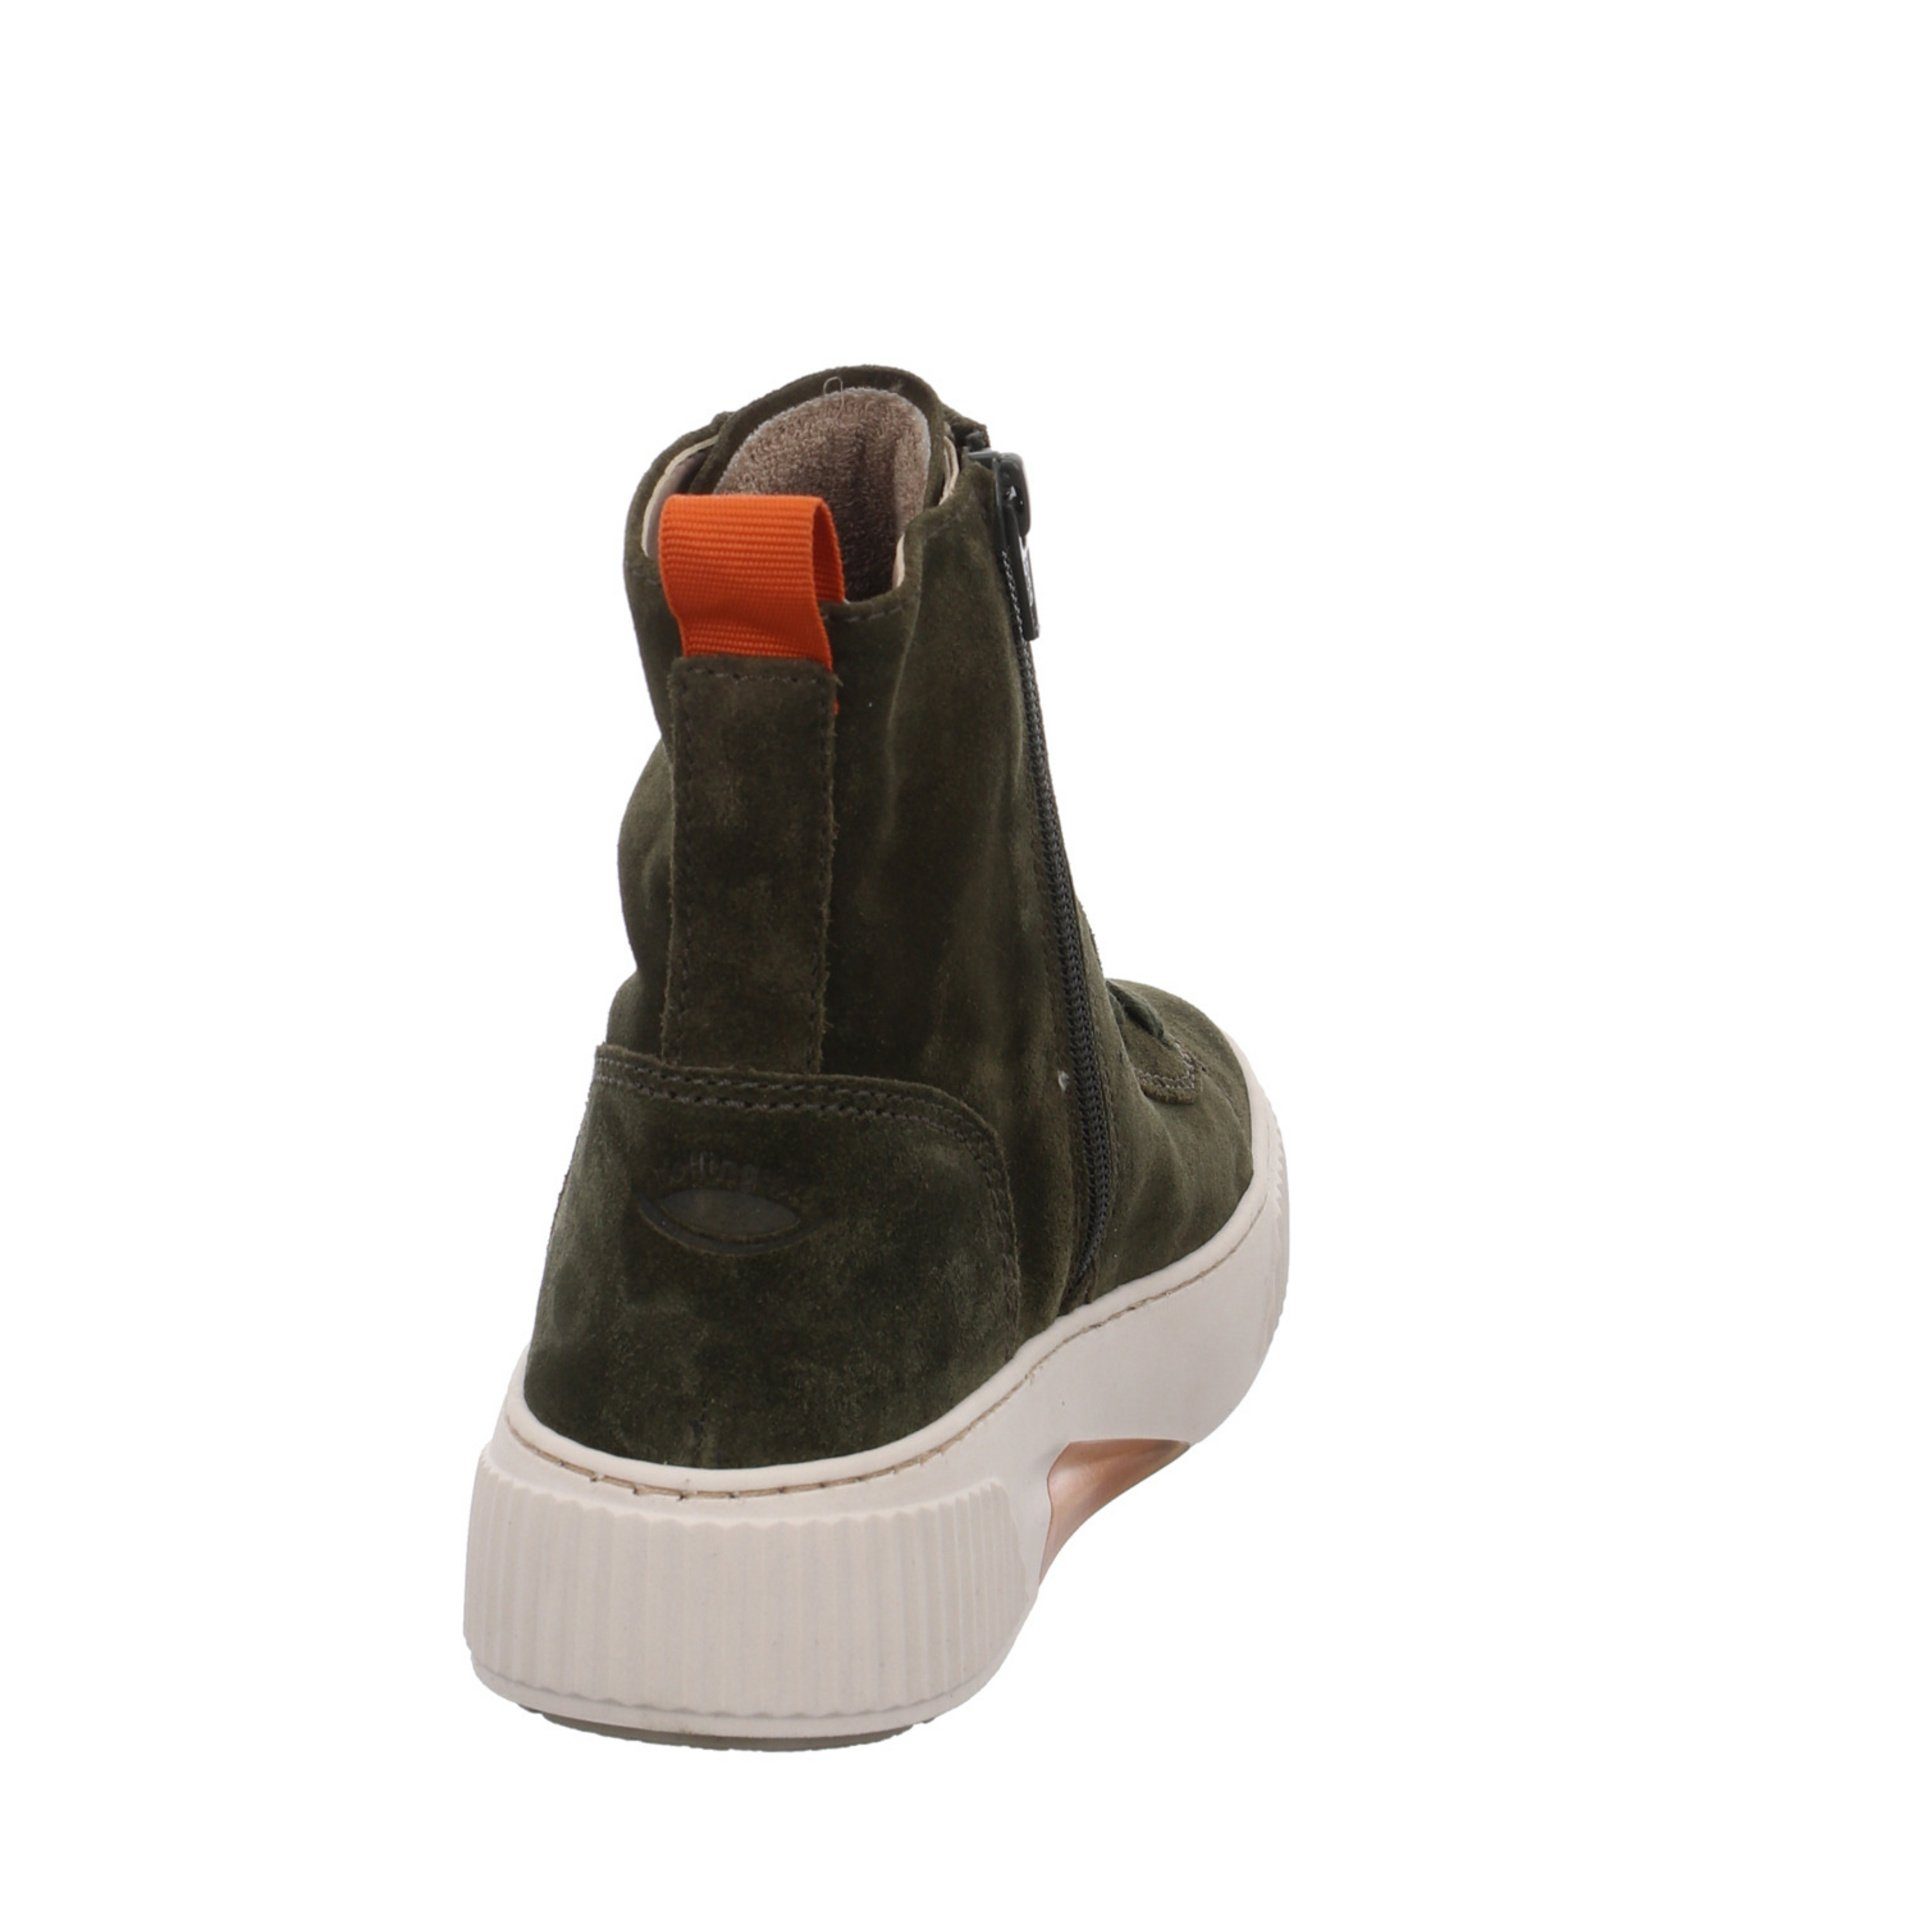 (bosco/orange) Veloursleder Grün Elegant Damen Klassisch Stiefel Stiefel Gabor Schuhe Boots